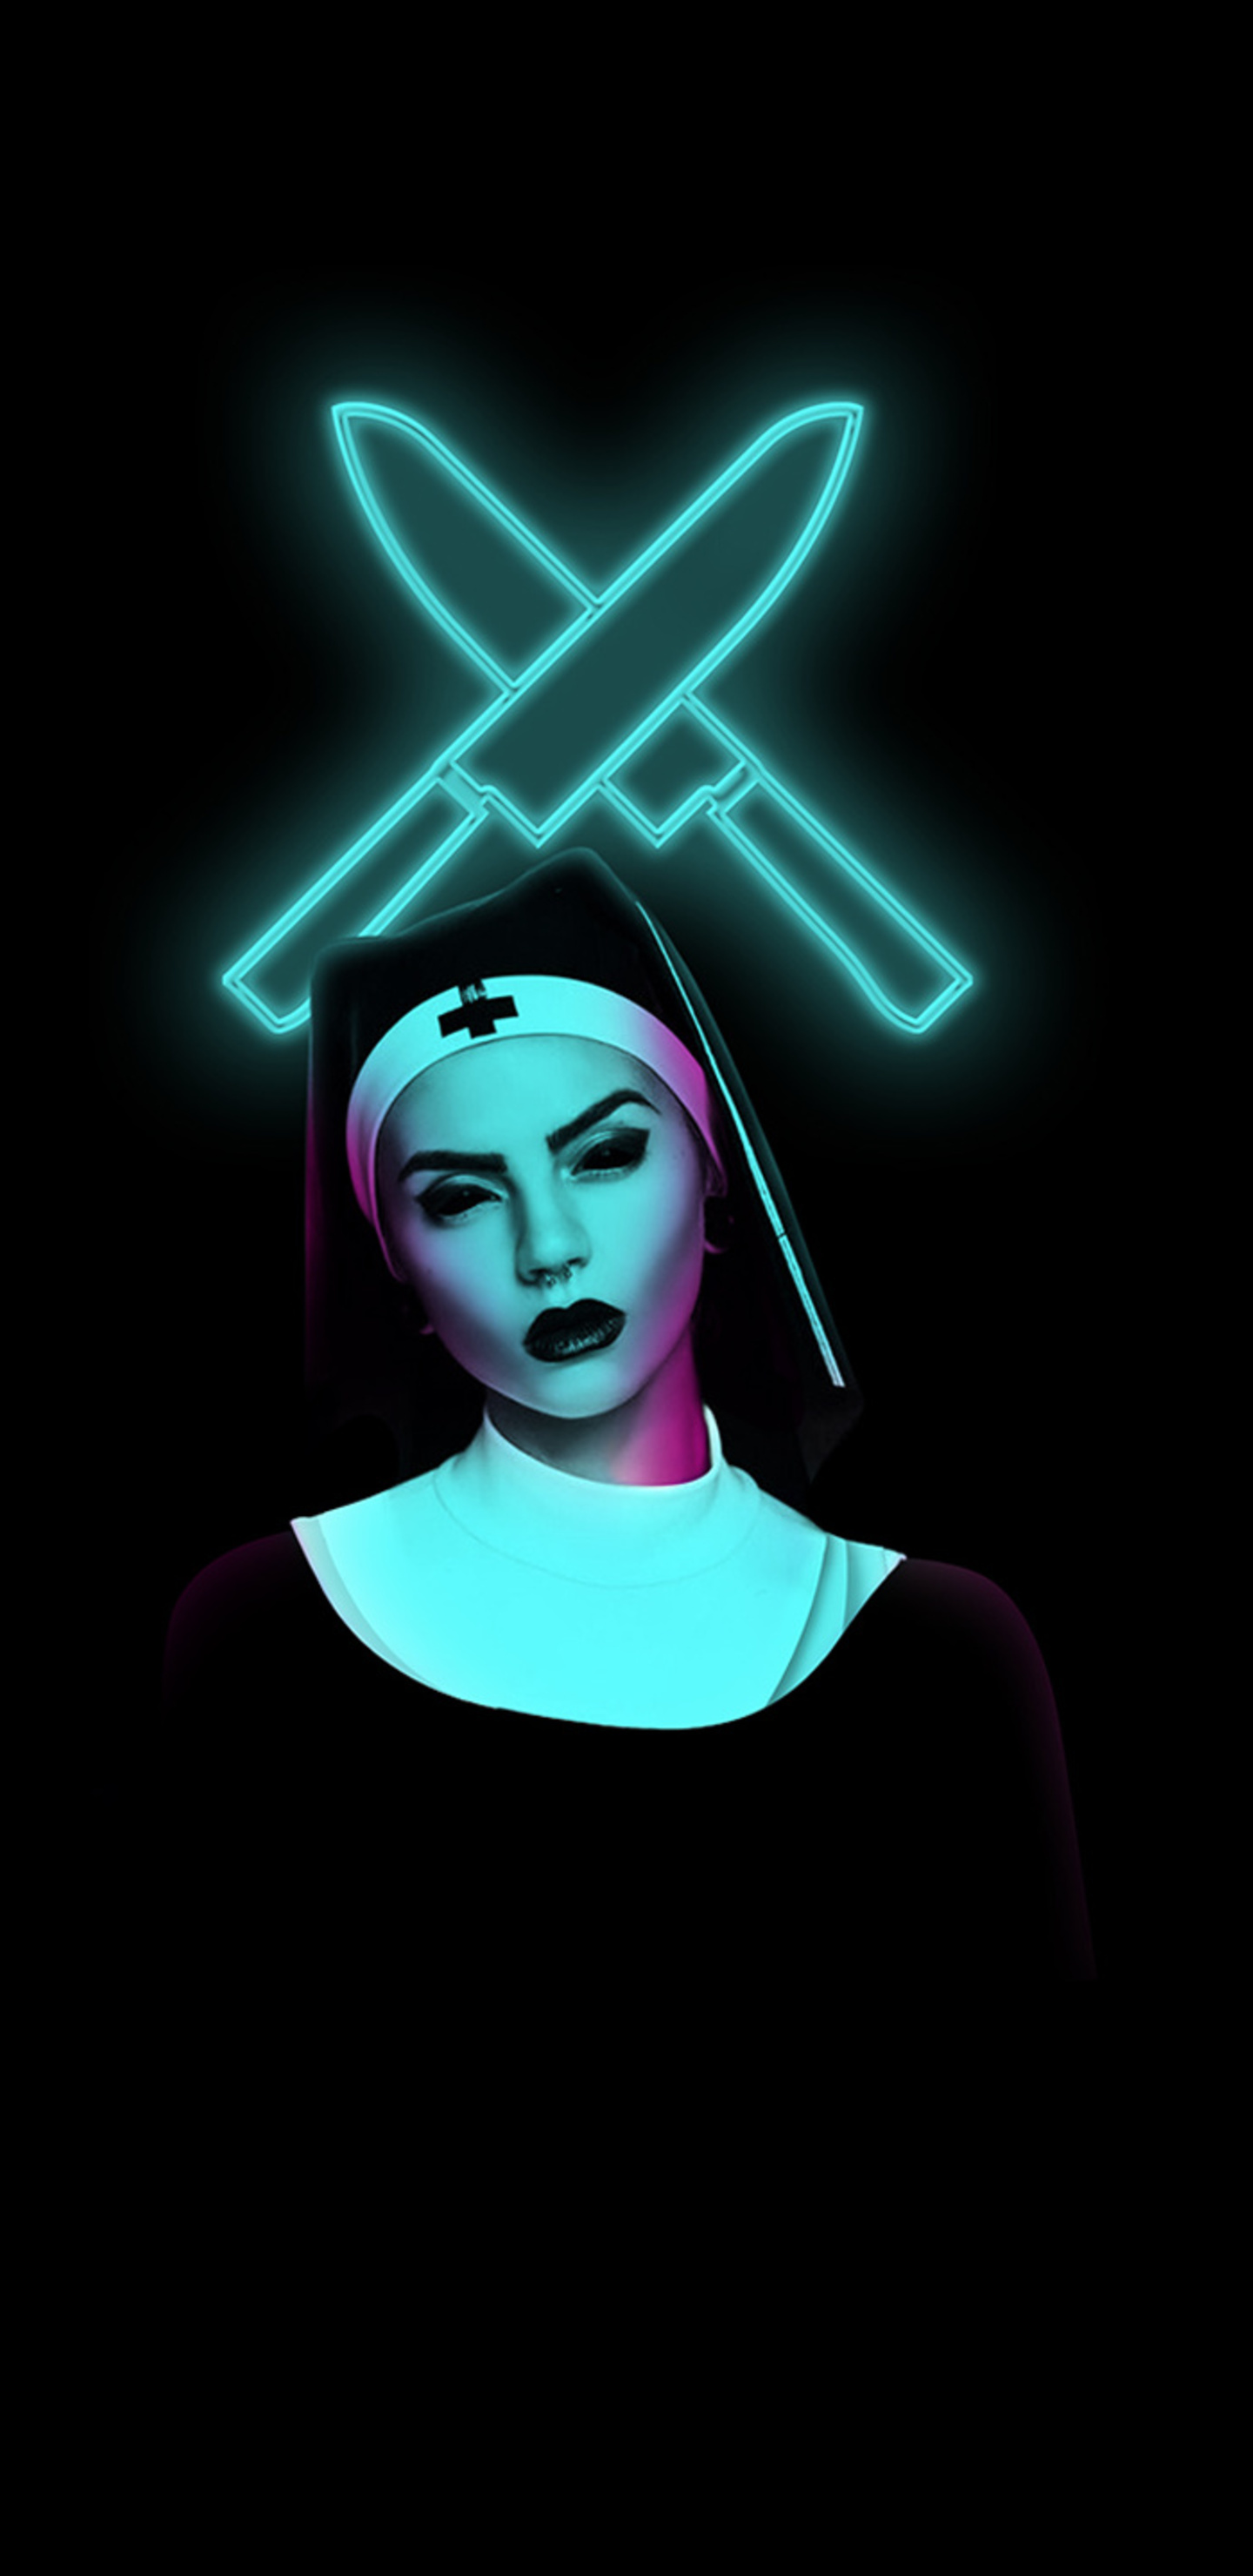 evil-nun-5l.jpg